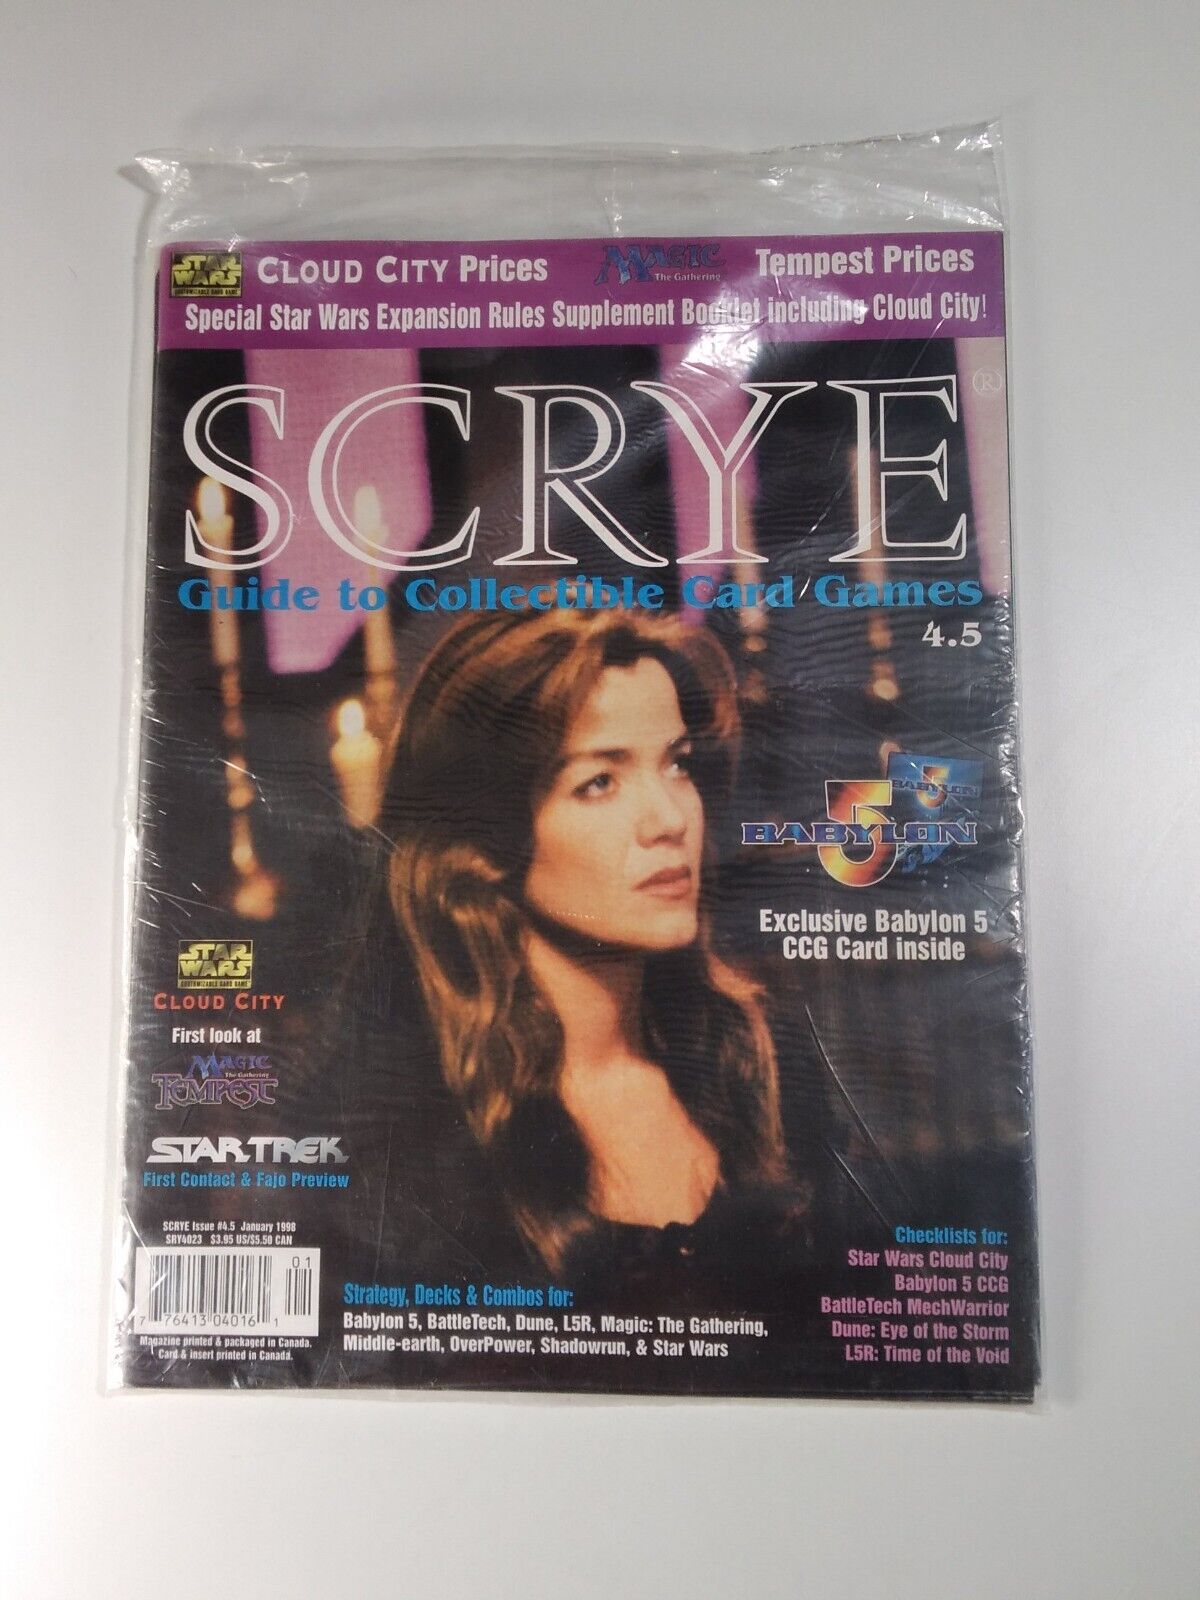 SCRYE Magazine Sealed Card 4.5 Vtg 1998 Card Game Guide Babylon 5 Star Wars MTG  Scrye - фотография #2